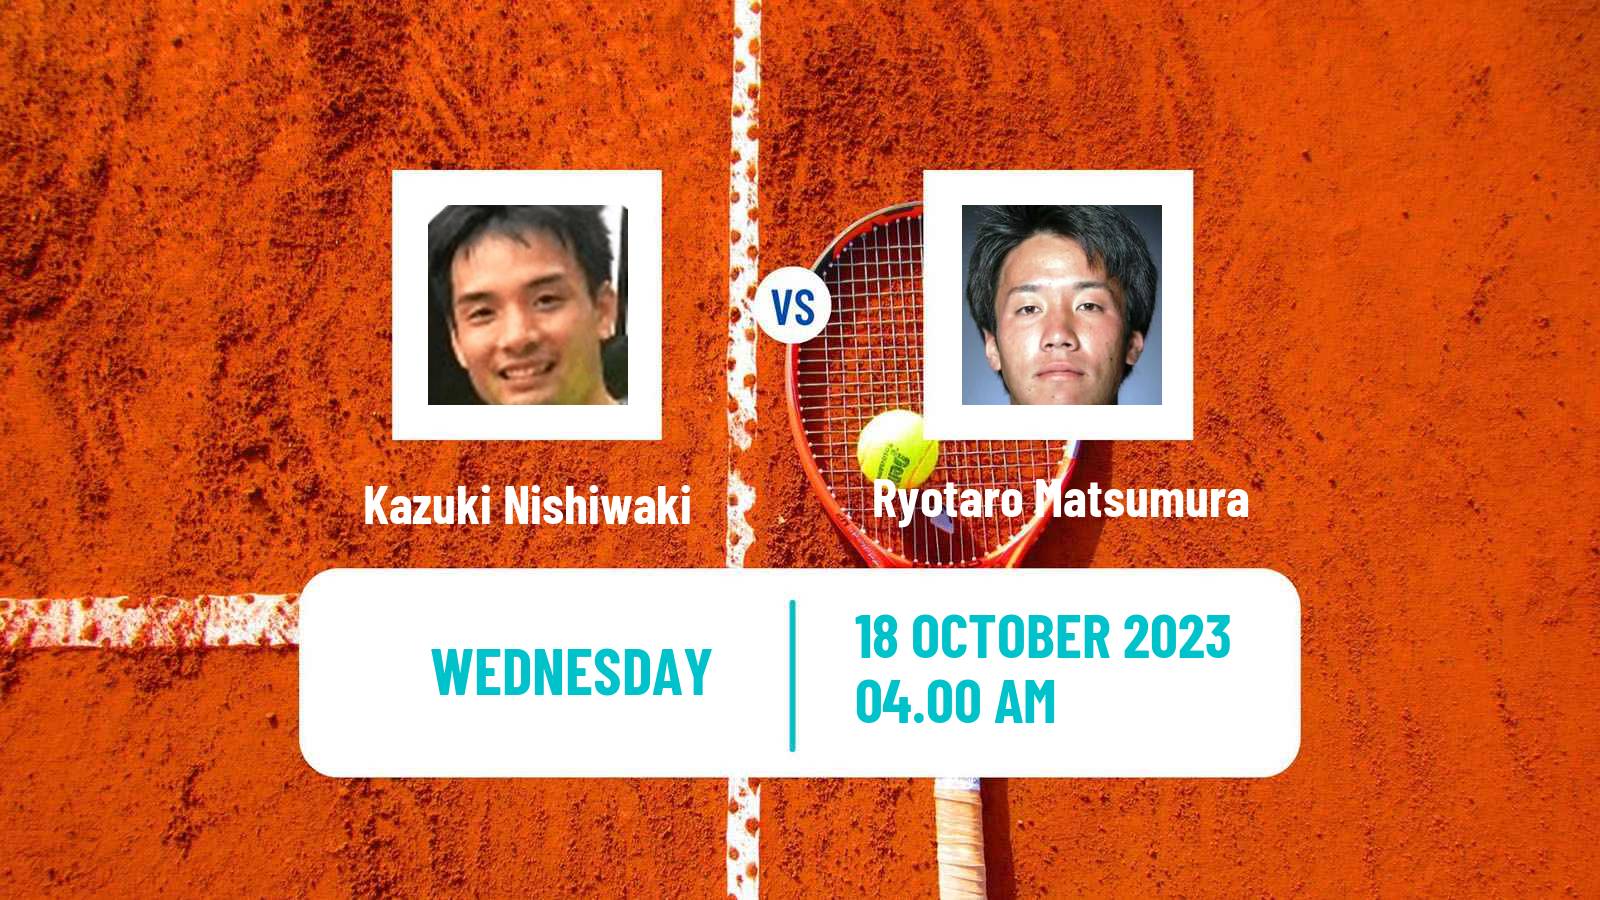 Tennis ITF M25 Dharwad Men Kazuki Nishiwaki - Ryotaro Matsumura